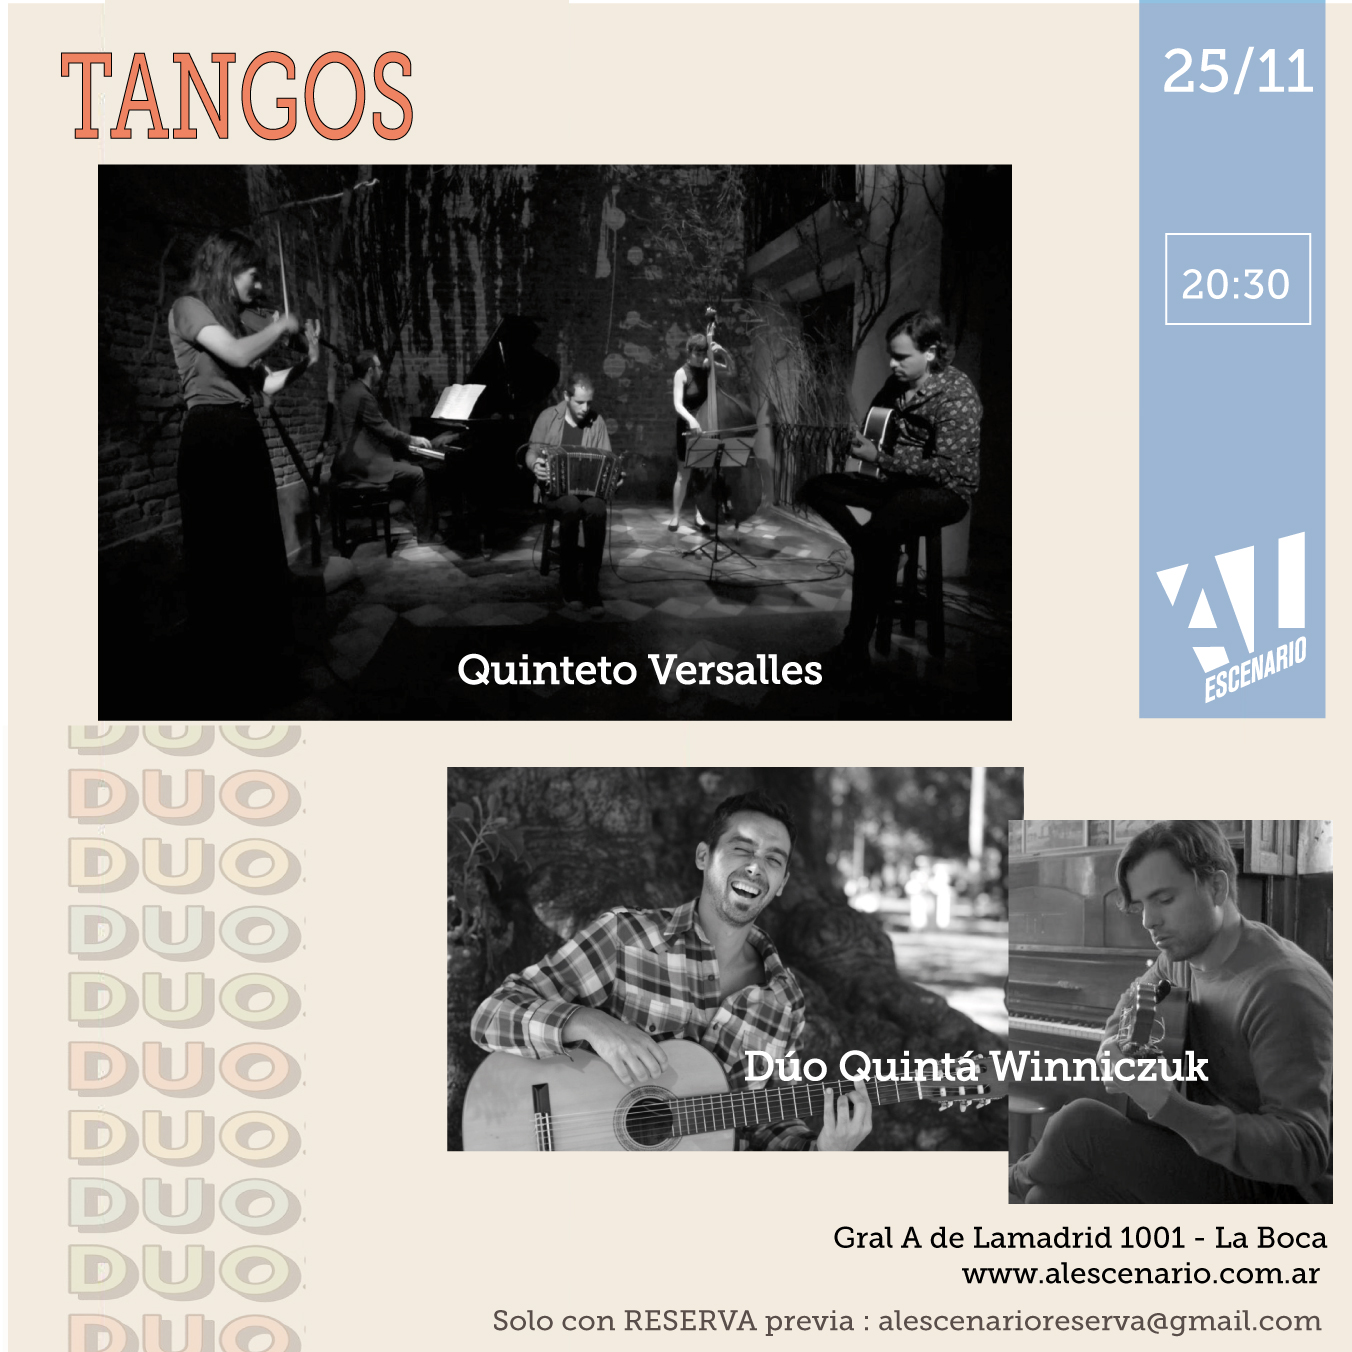 Duos de tango - Al Escenario